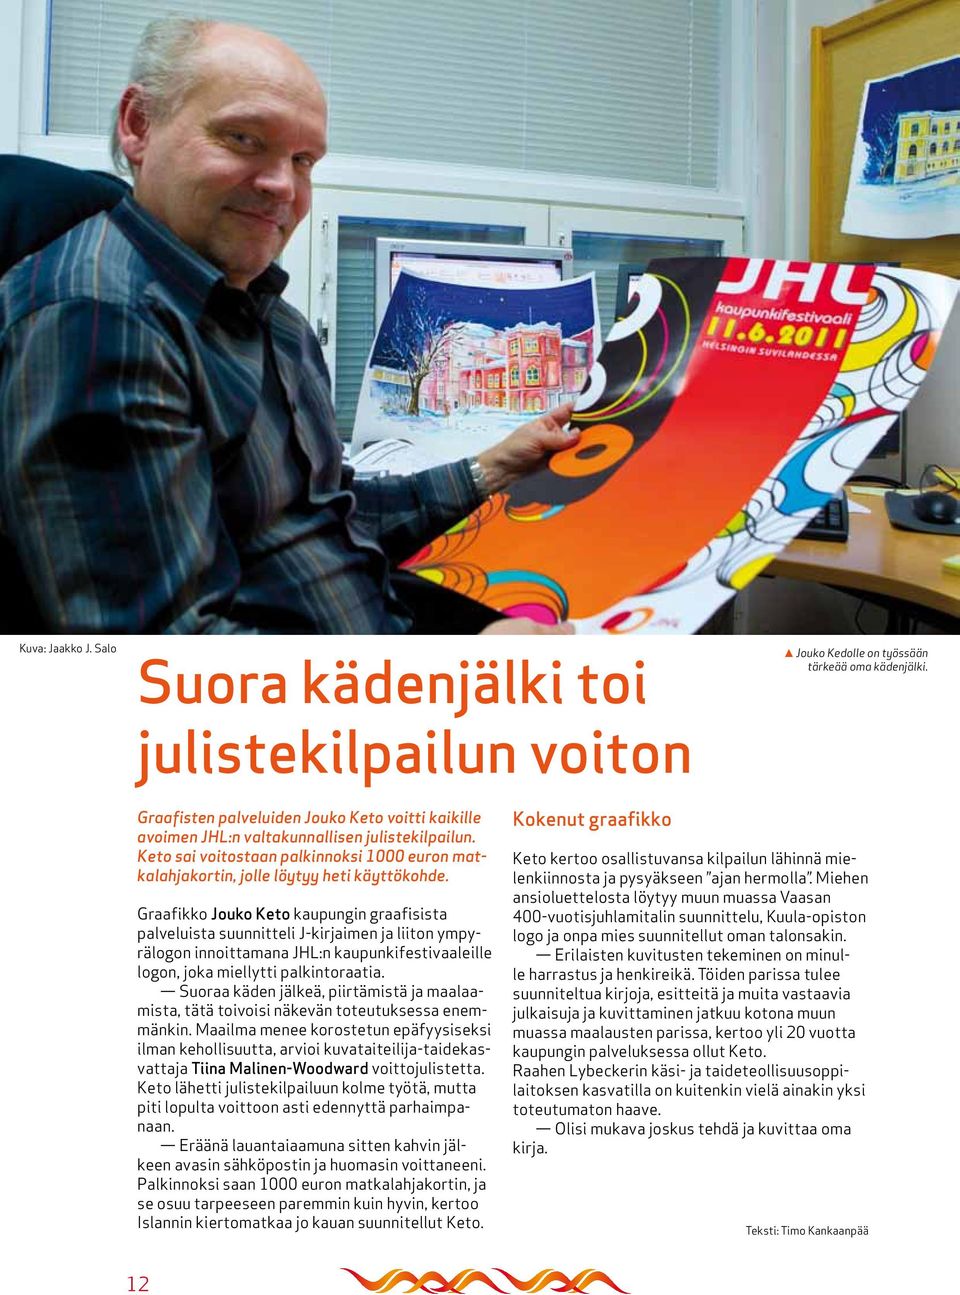 Graafikko Jouko Keto kaupungin graafisista palveluista suunnitteli J-kirjaimen ja liiton ympyrälogon innoittamana JHL:n kaupunkifestivaaleille logon, joka miellytti palkintoraatia.